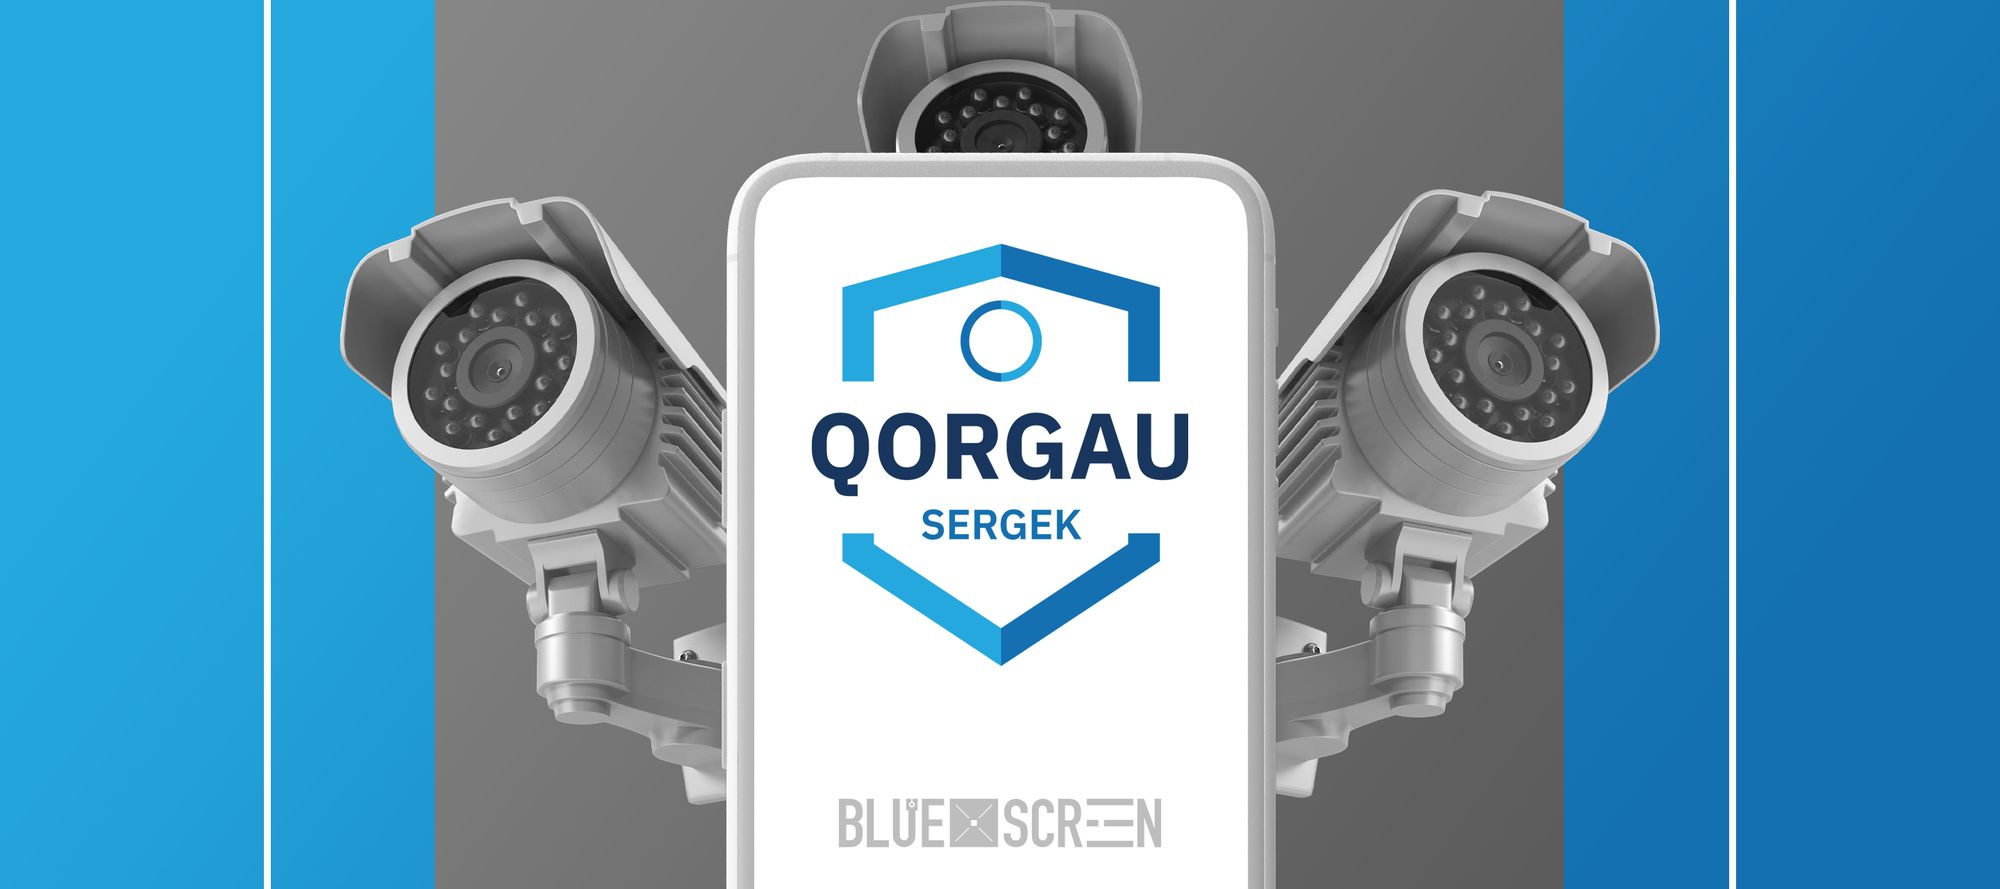 Как работает мобильное приложение “Sergek Qorgau”